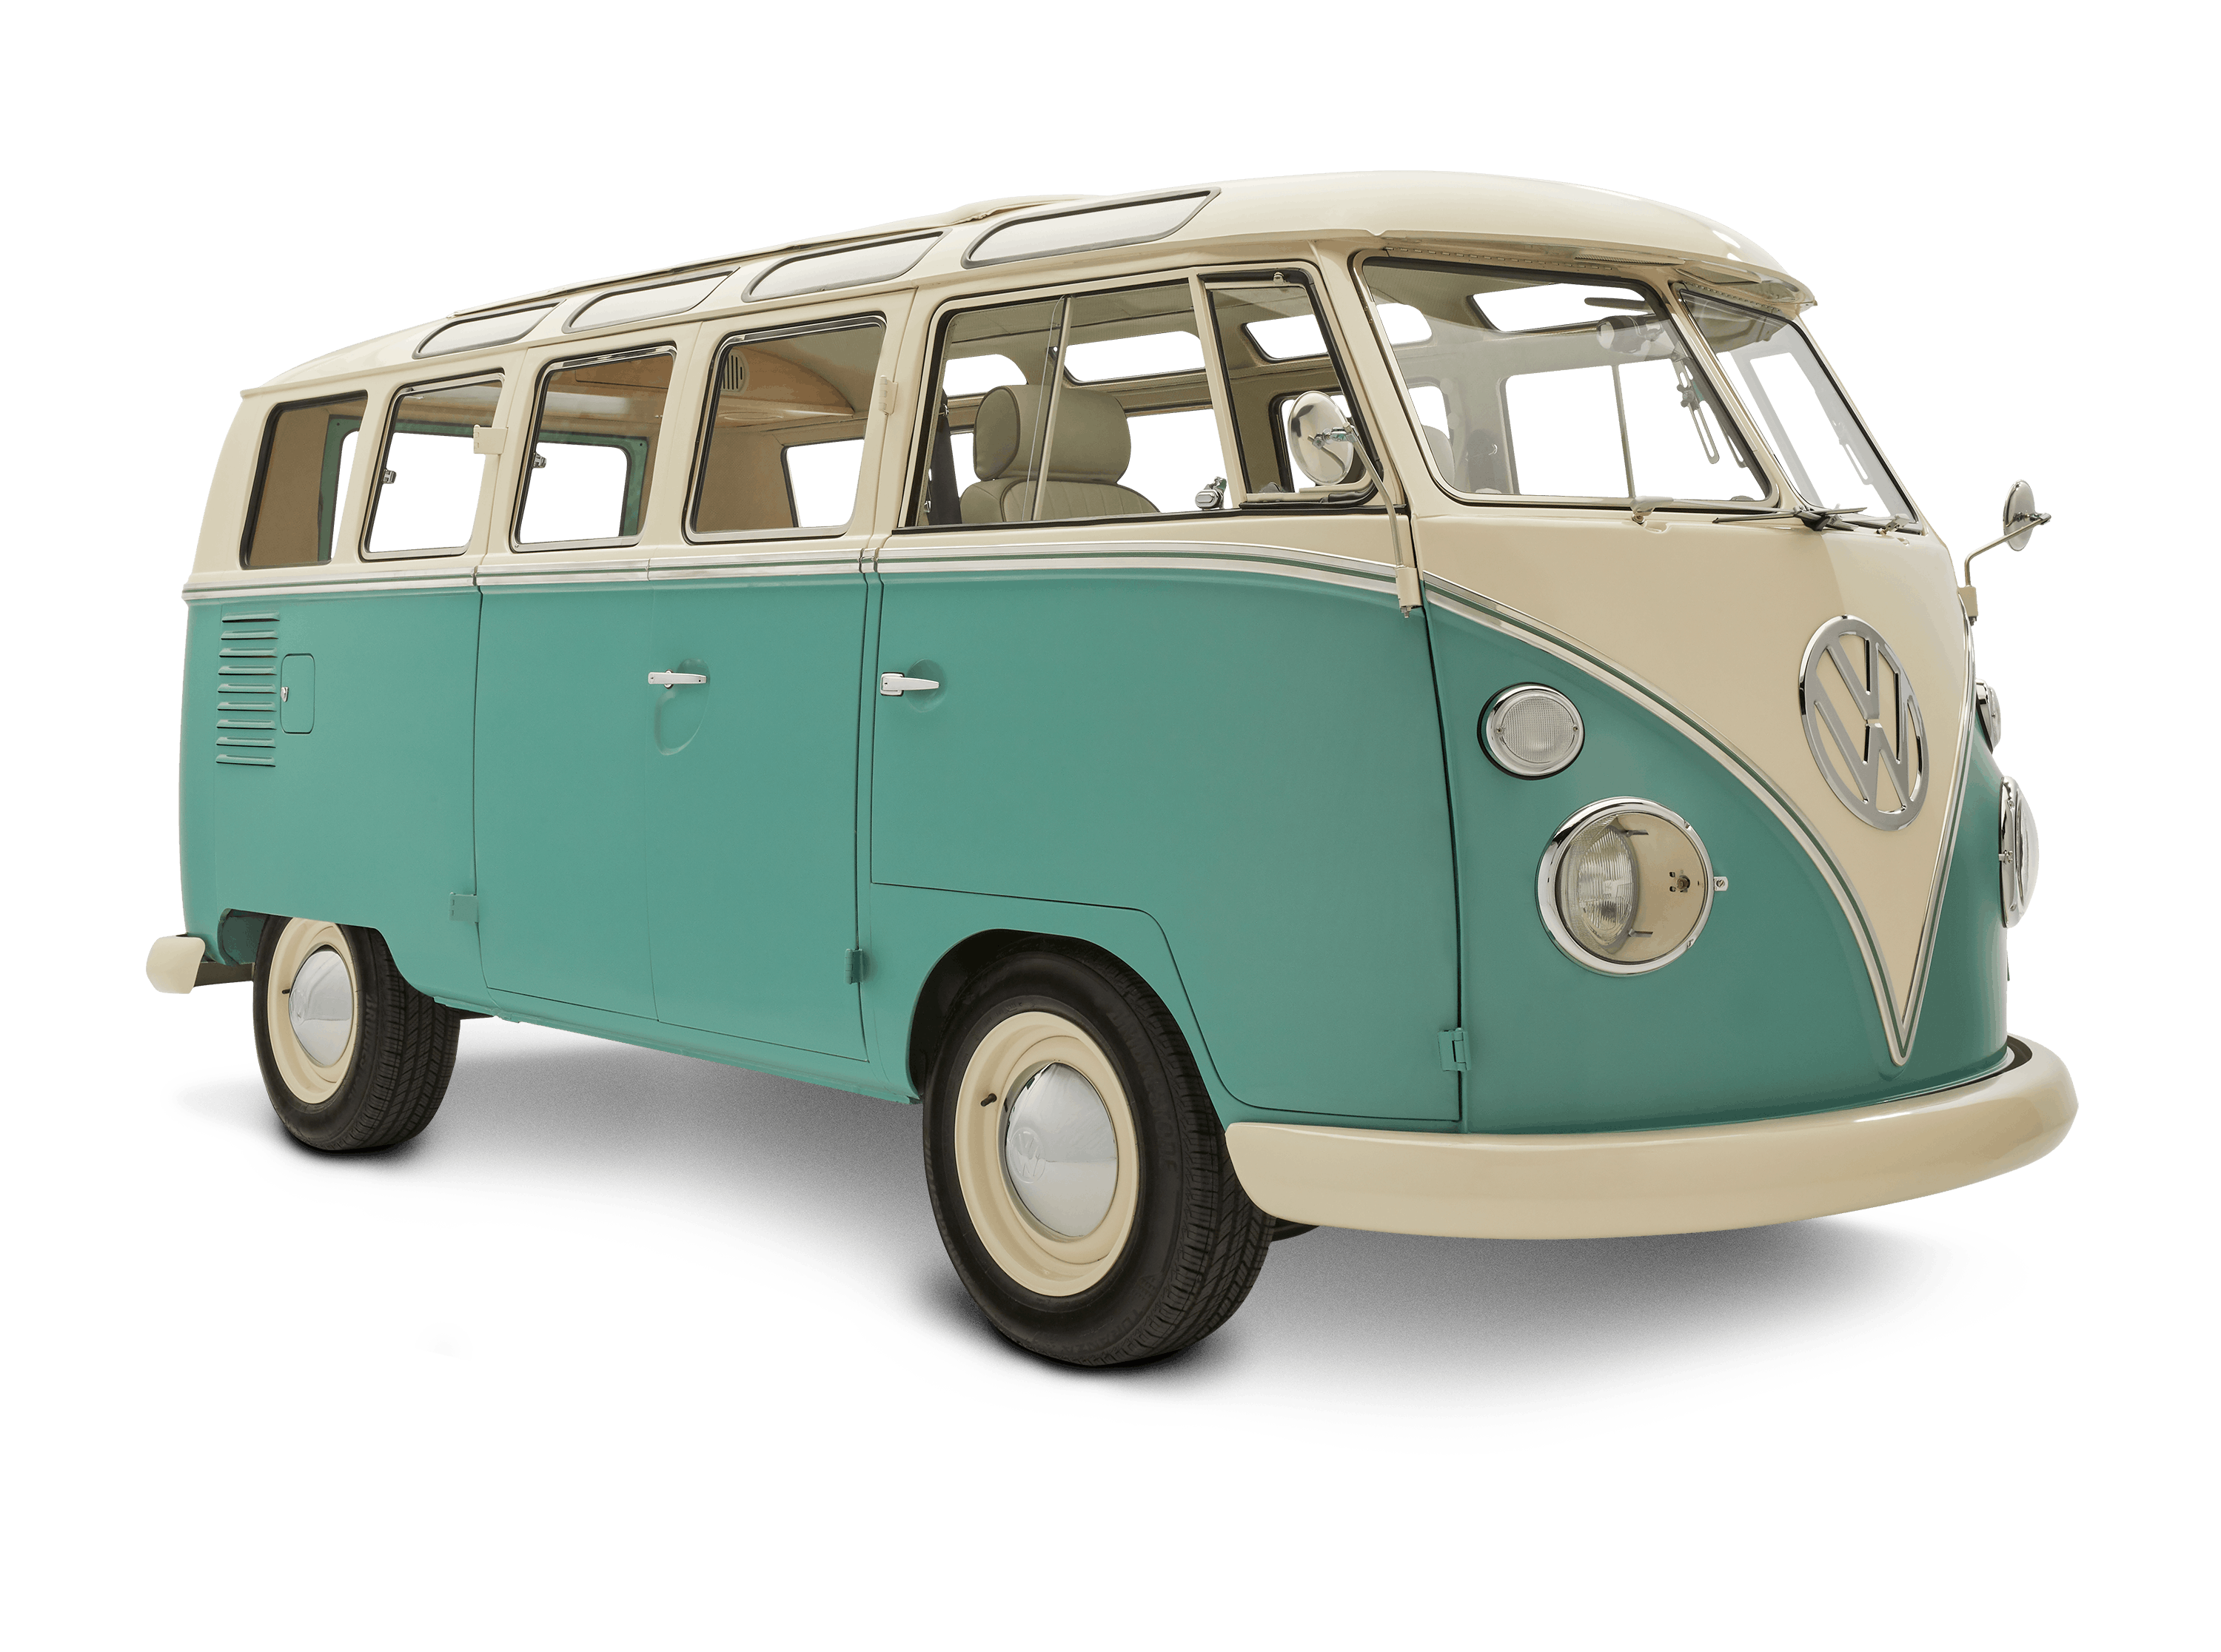 Aap Verdienen voetstappen Vintage VW Bus Restomod: Electric VW Bus | Kindred Motorworks